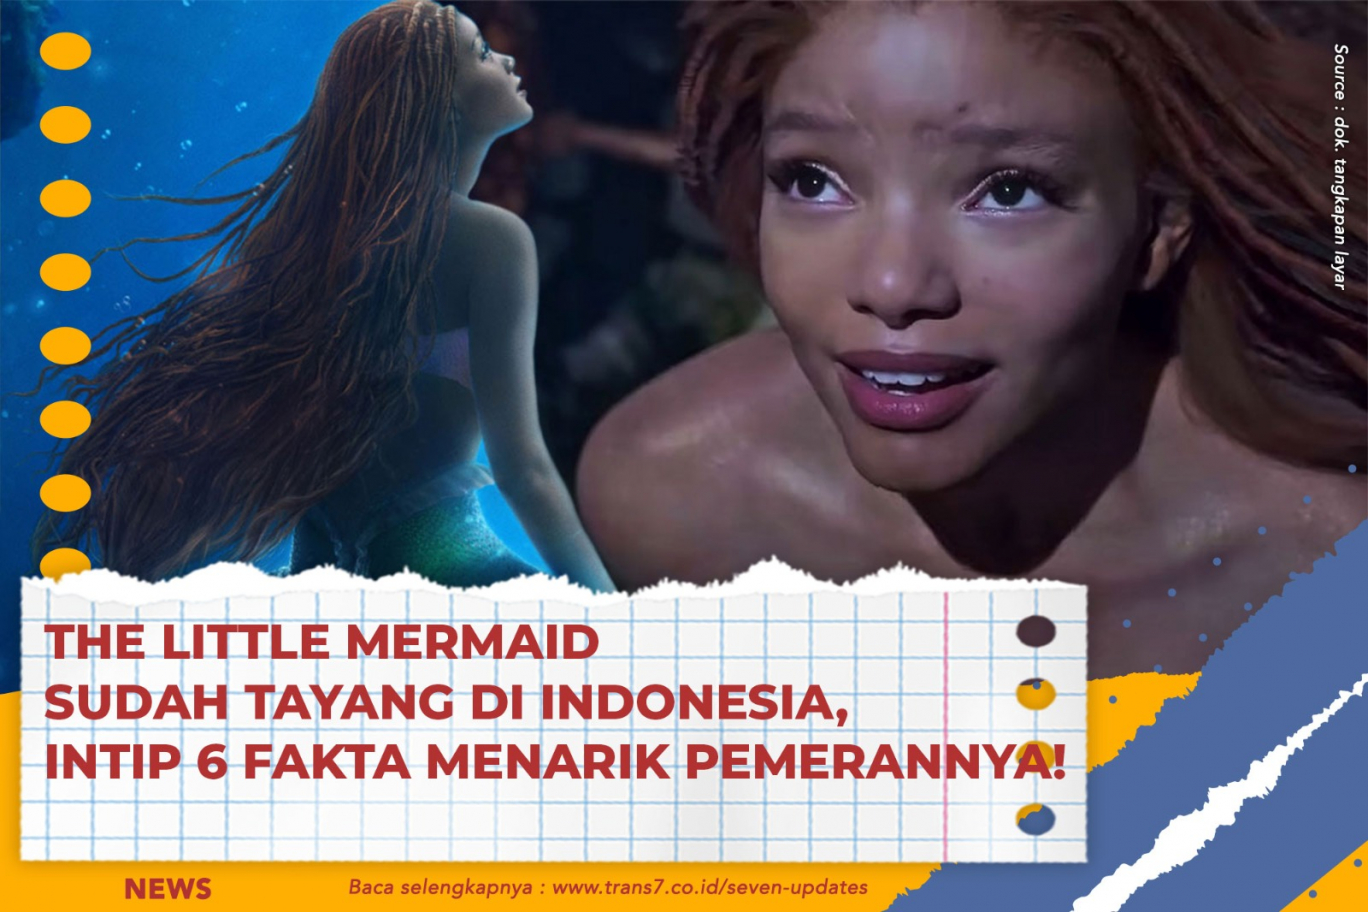 The Little Mermaid Sudah Tayang Di Indonesia, Intip 6 Fakta Menarik Pemerannya!